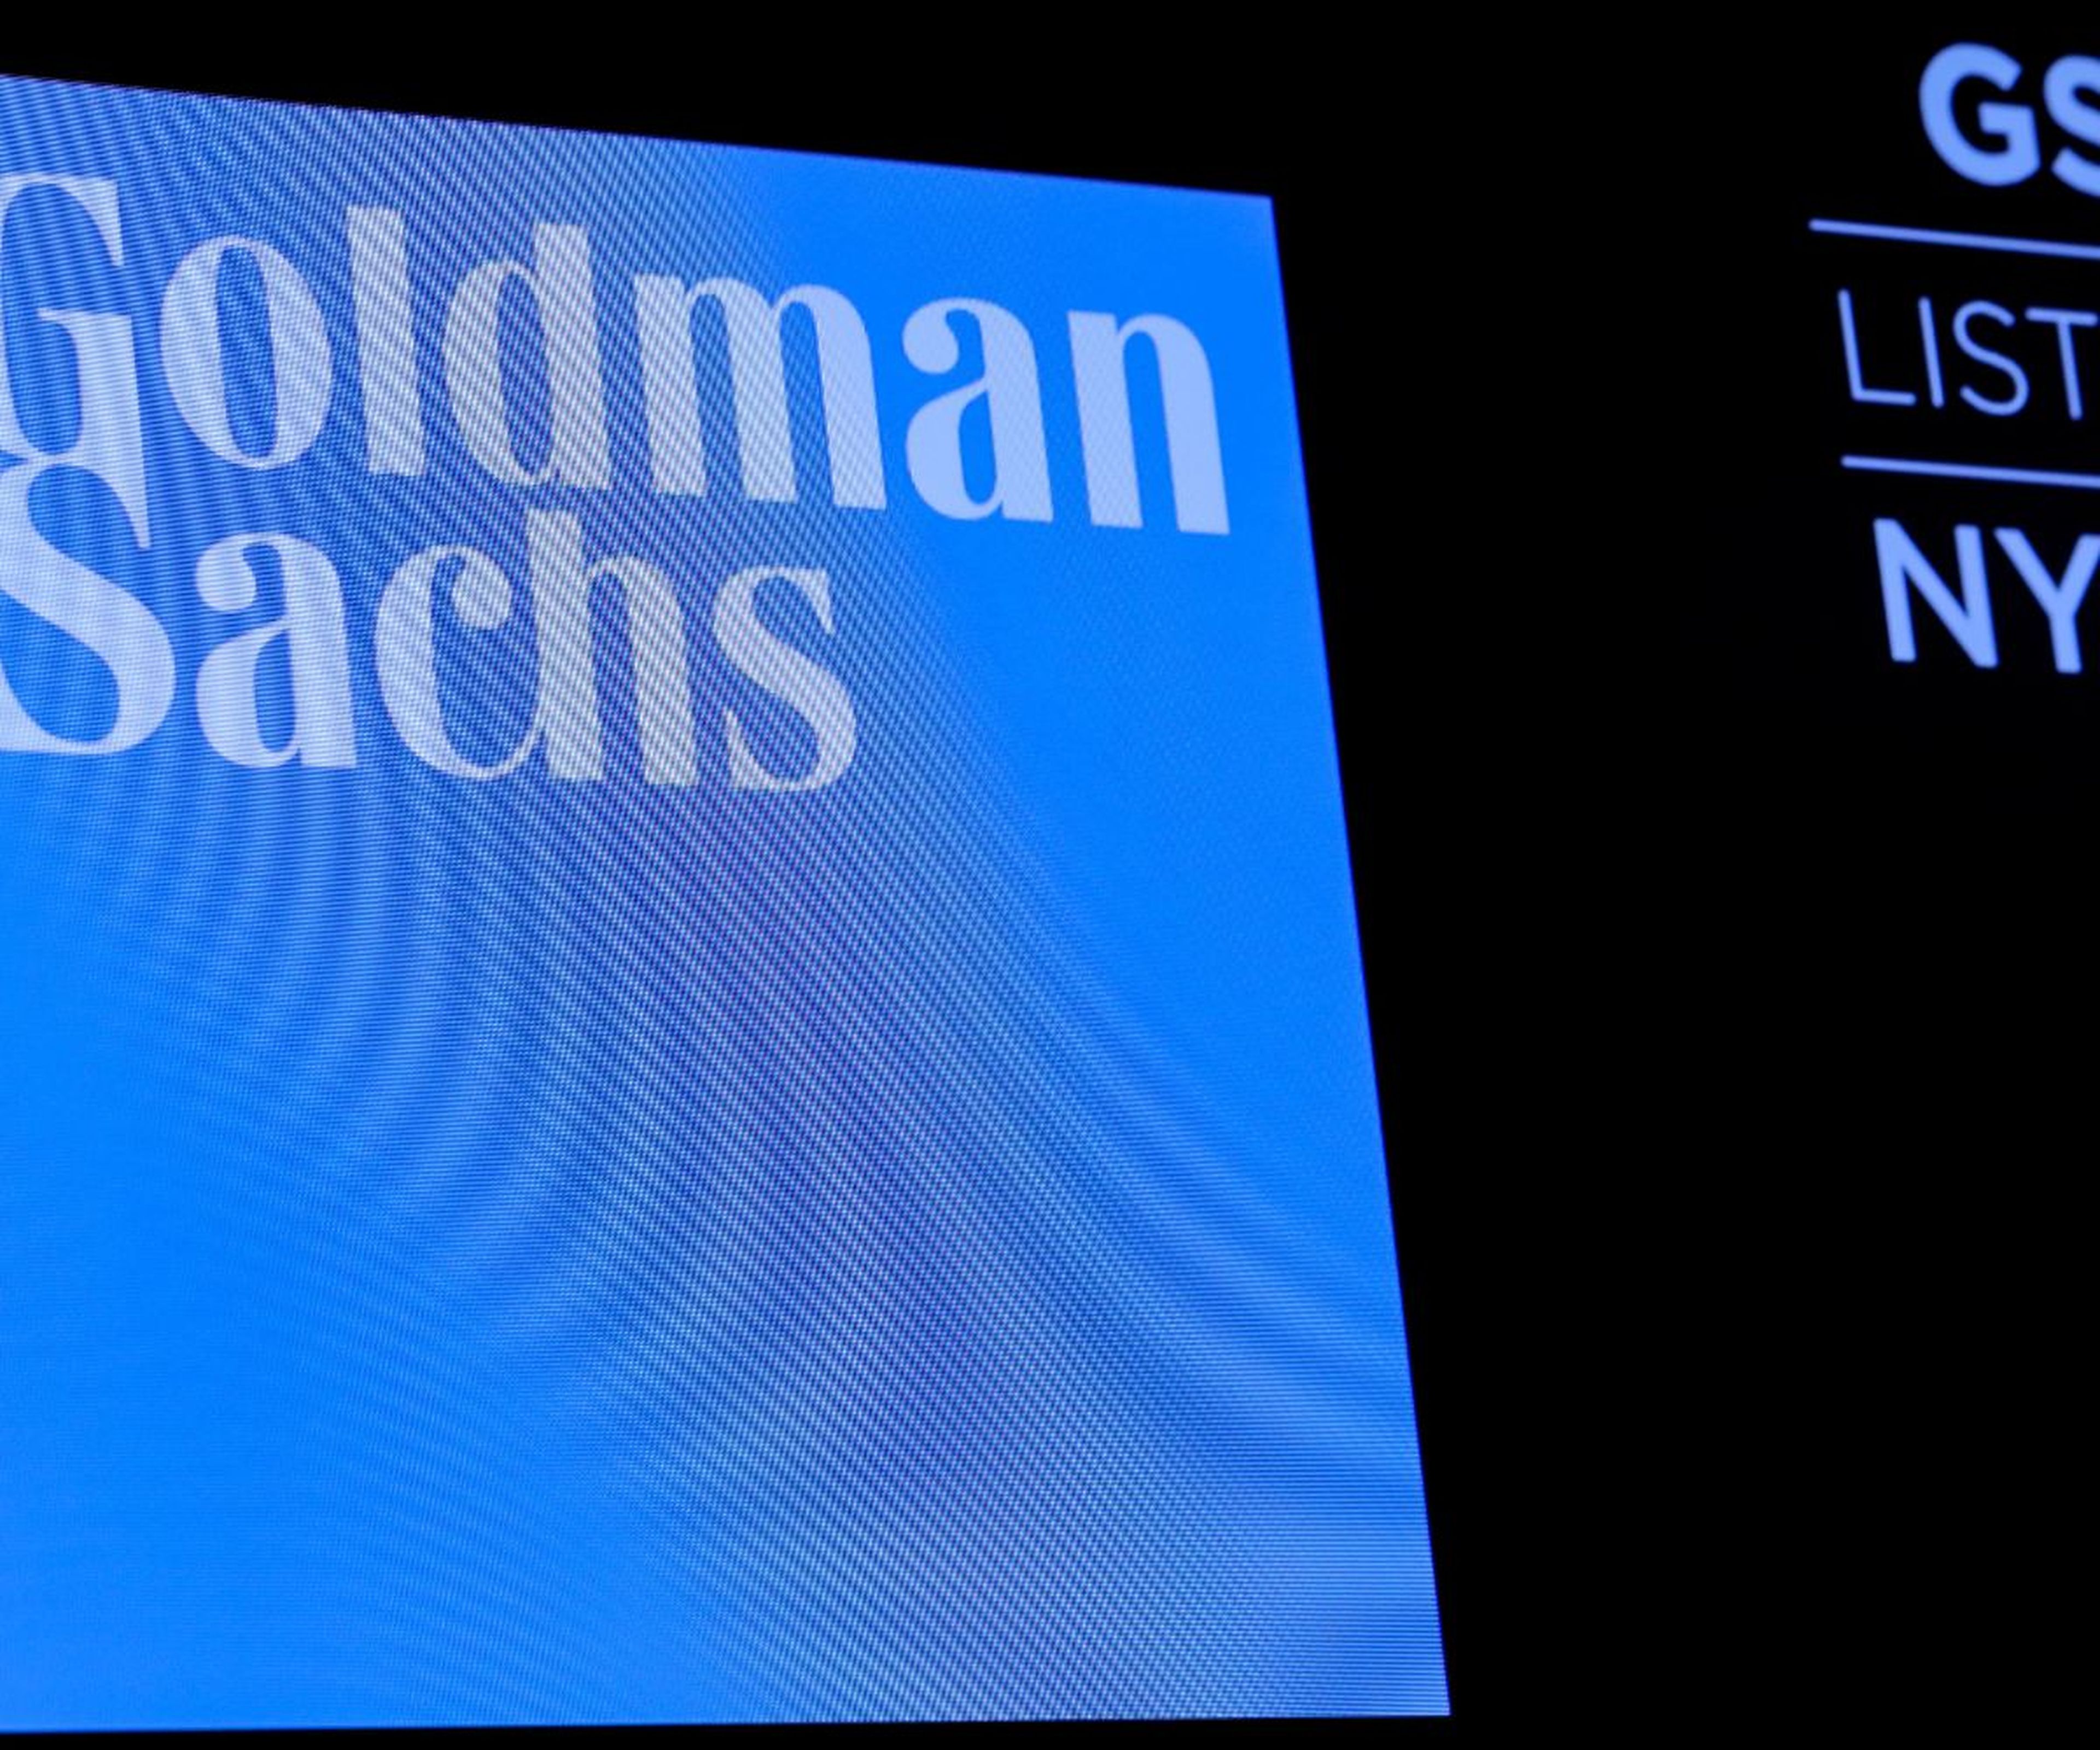 Panel de Goldman Sachs en la bolsa de Nueva York.